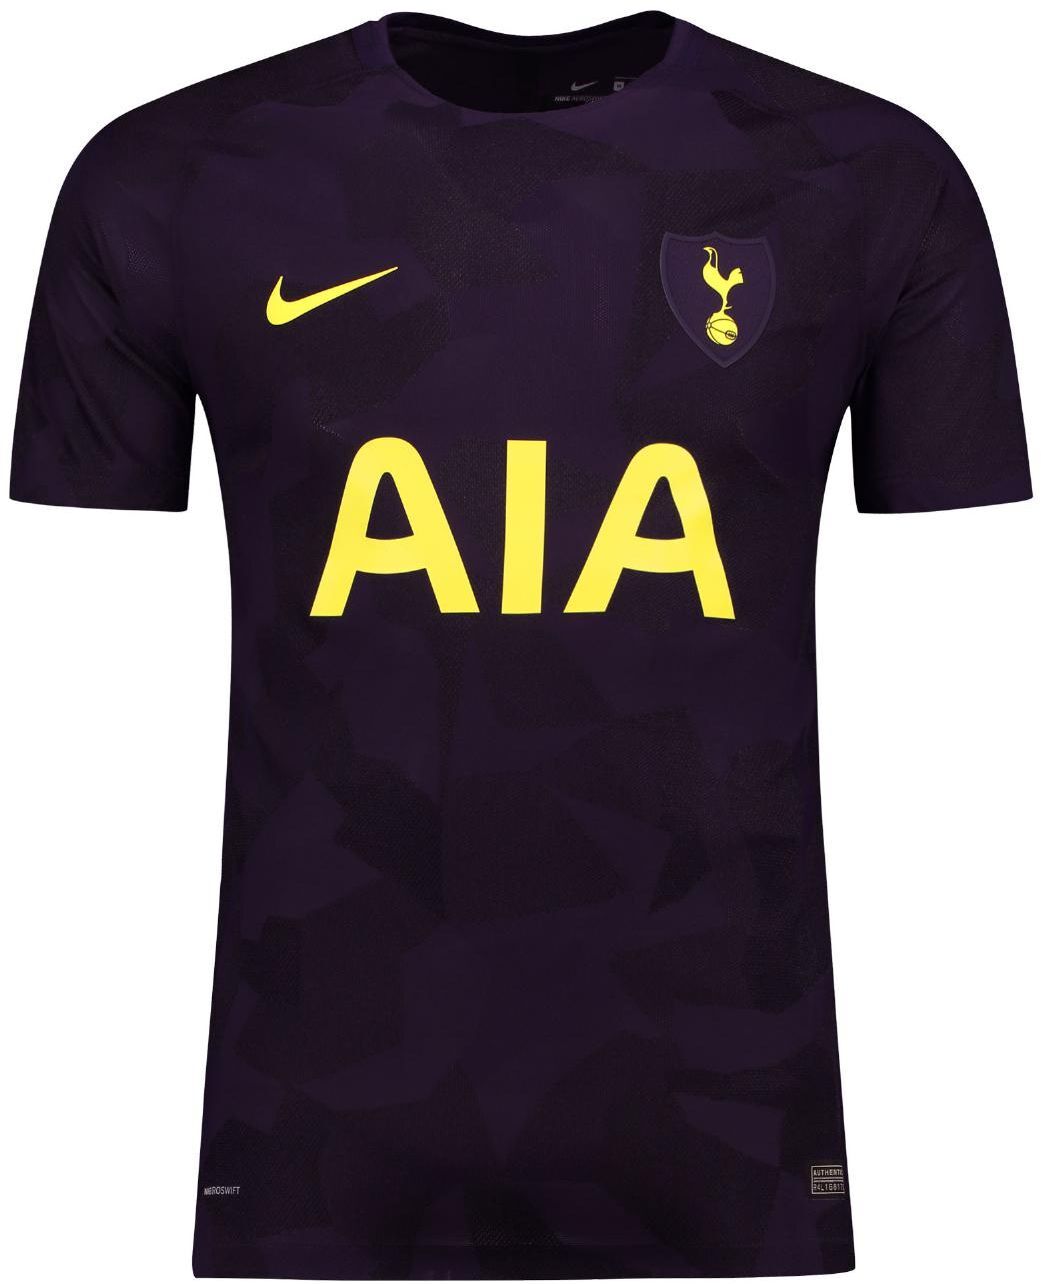 Tottenham Hotspur F.C. derde shirt seizoen 2017/2018